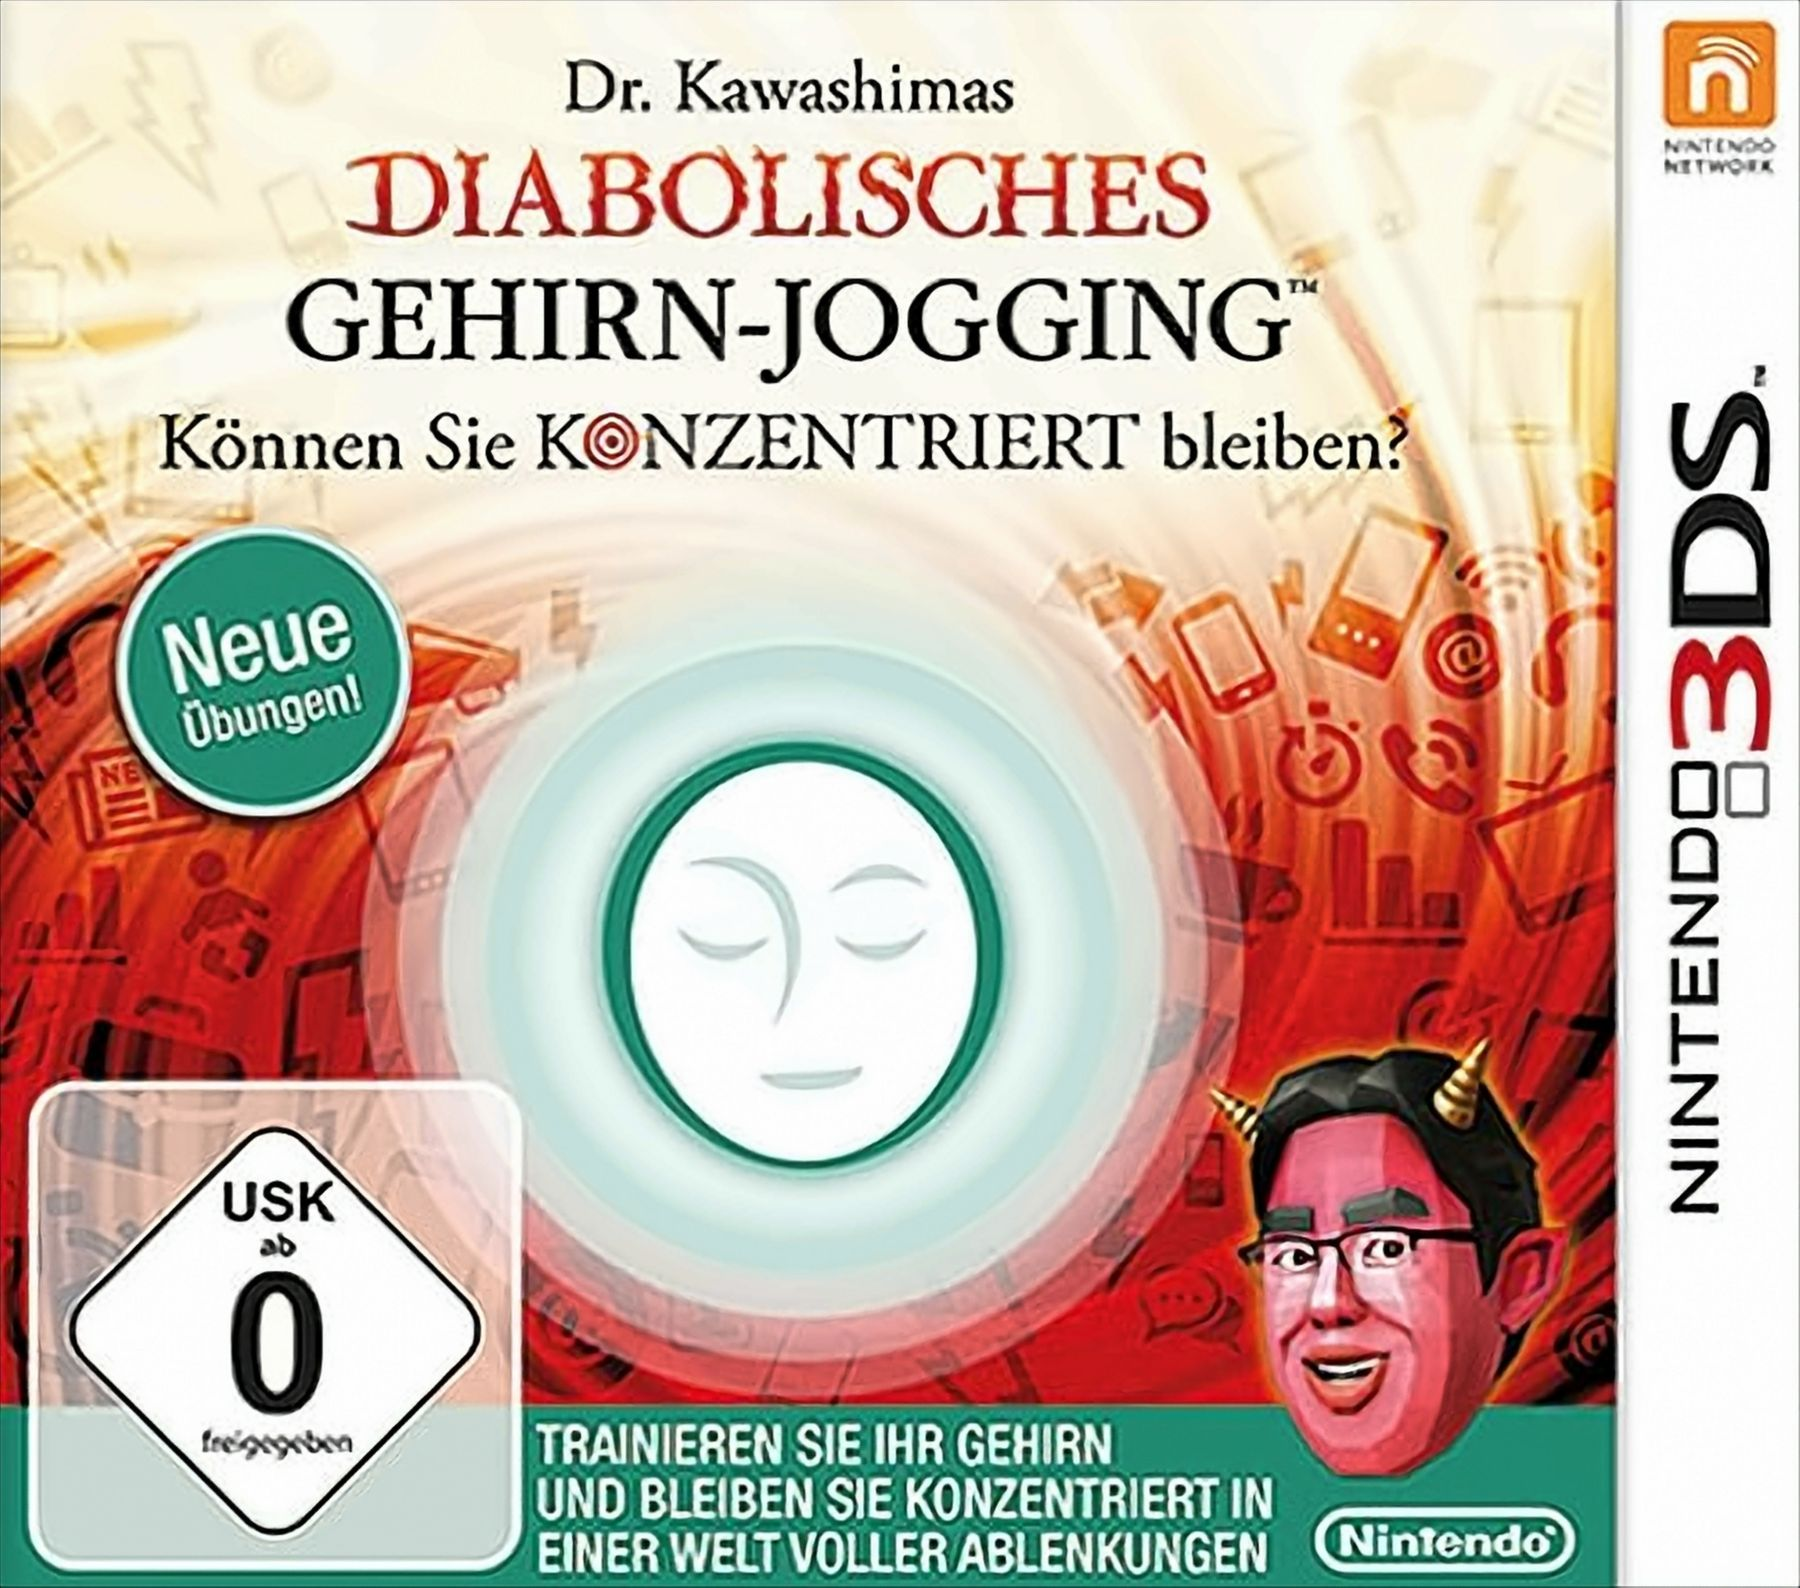 Kawashimas 3DS] Dr. Gehirn-Jogging - [Nintendo Diabolisches